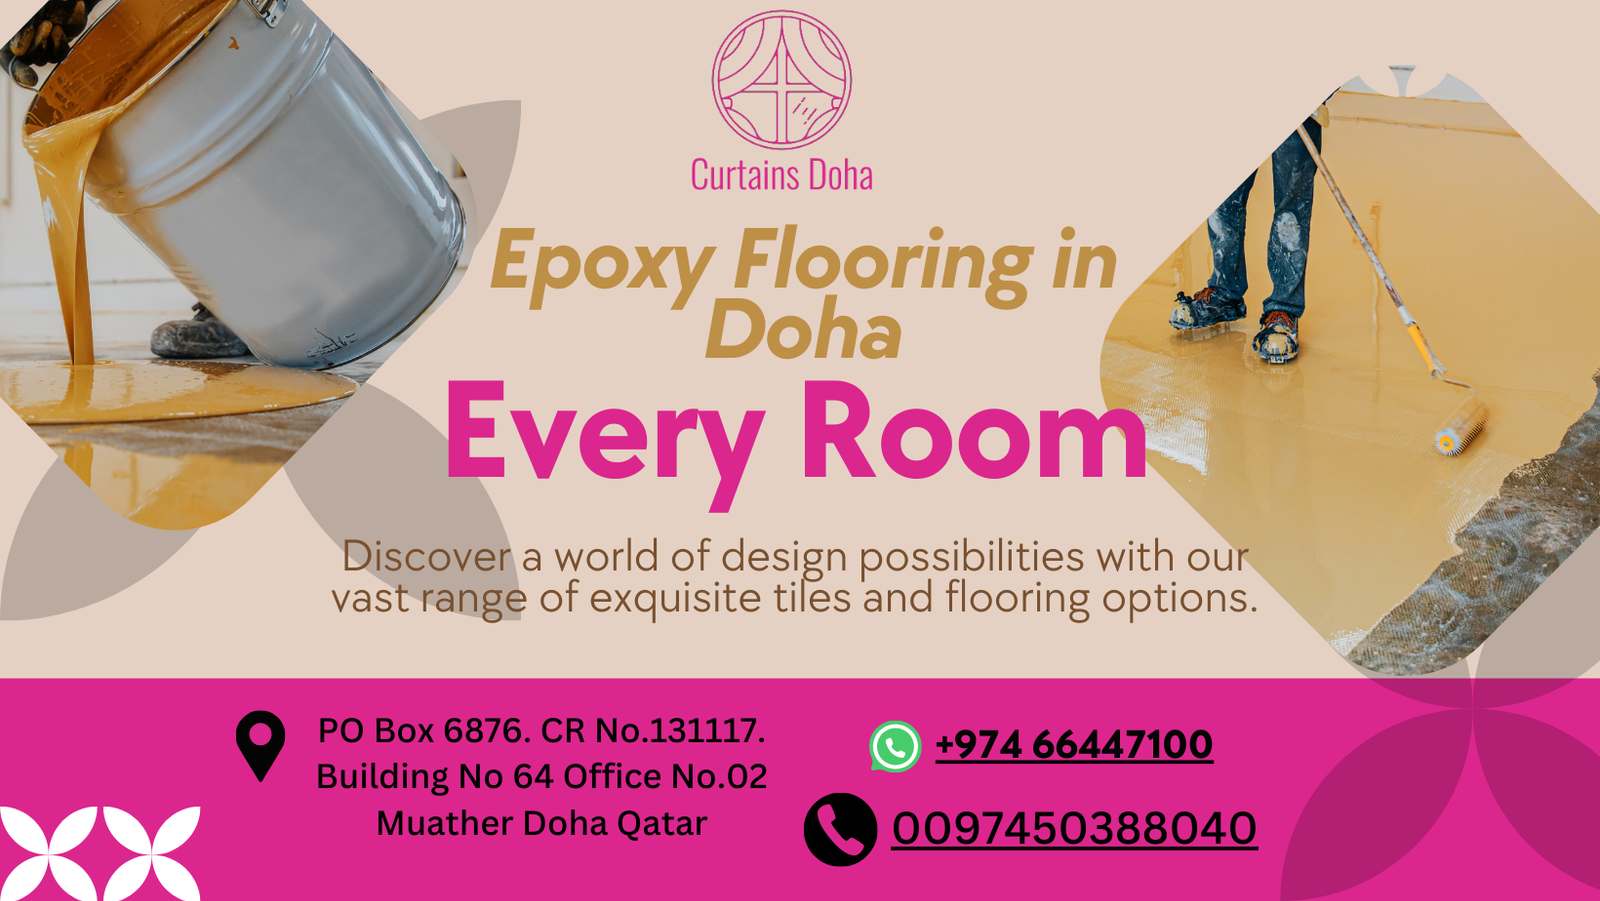 Epoxy Flooring in Doha